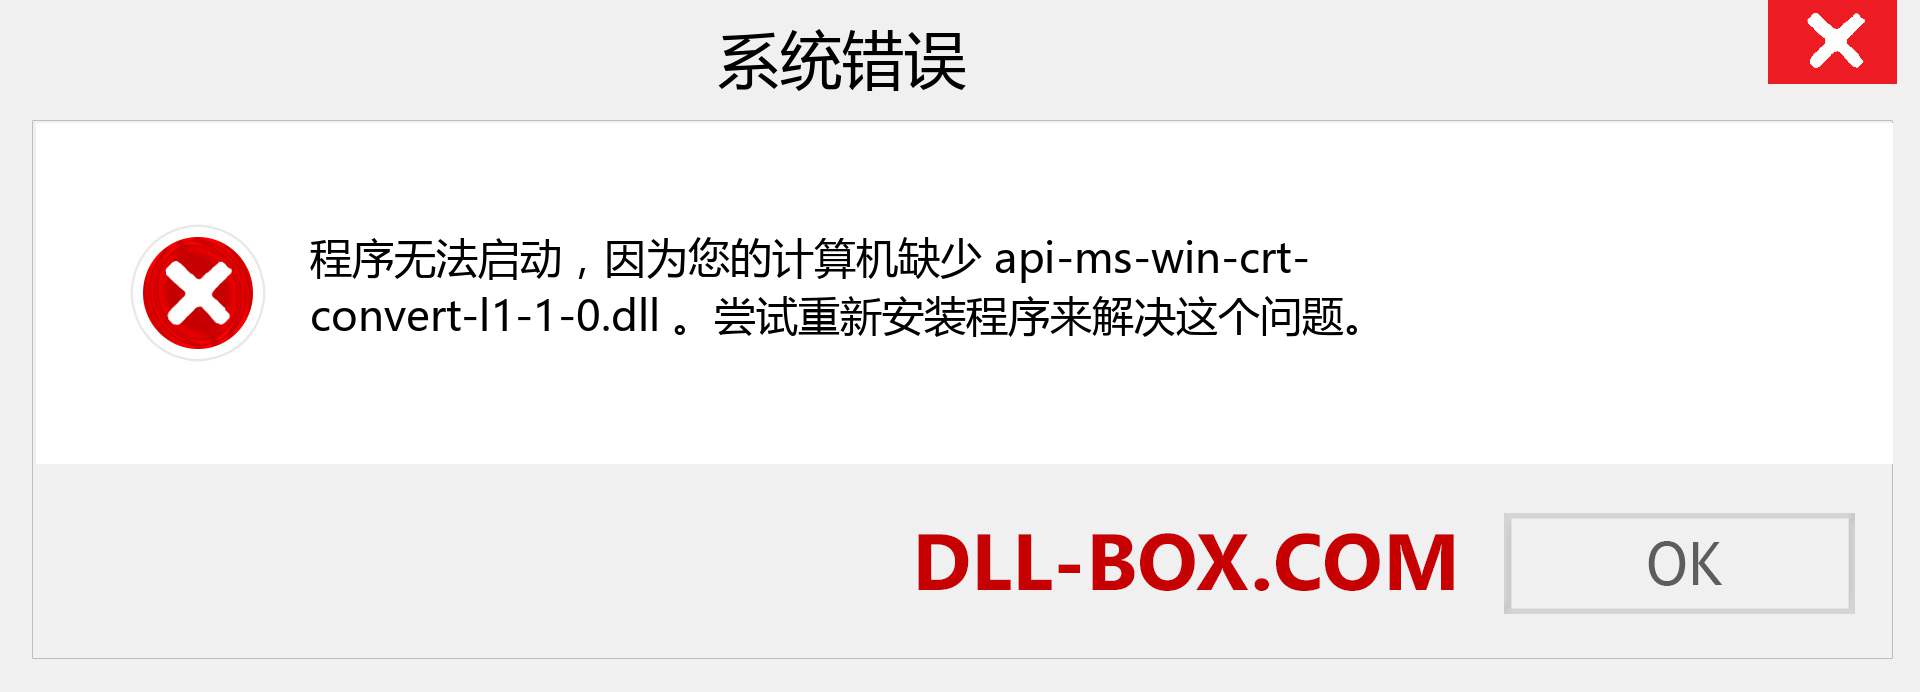 api-ms-win-crt-convert-l1-1-0.dll 文件丢失？。 适用于 Windows 7、8、10 的下载 - 修复 Windows、照片、图像上的 api-ms-win-crt-convert-l1-1-0 dll 丢失错误